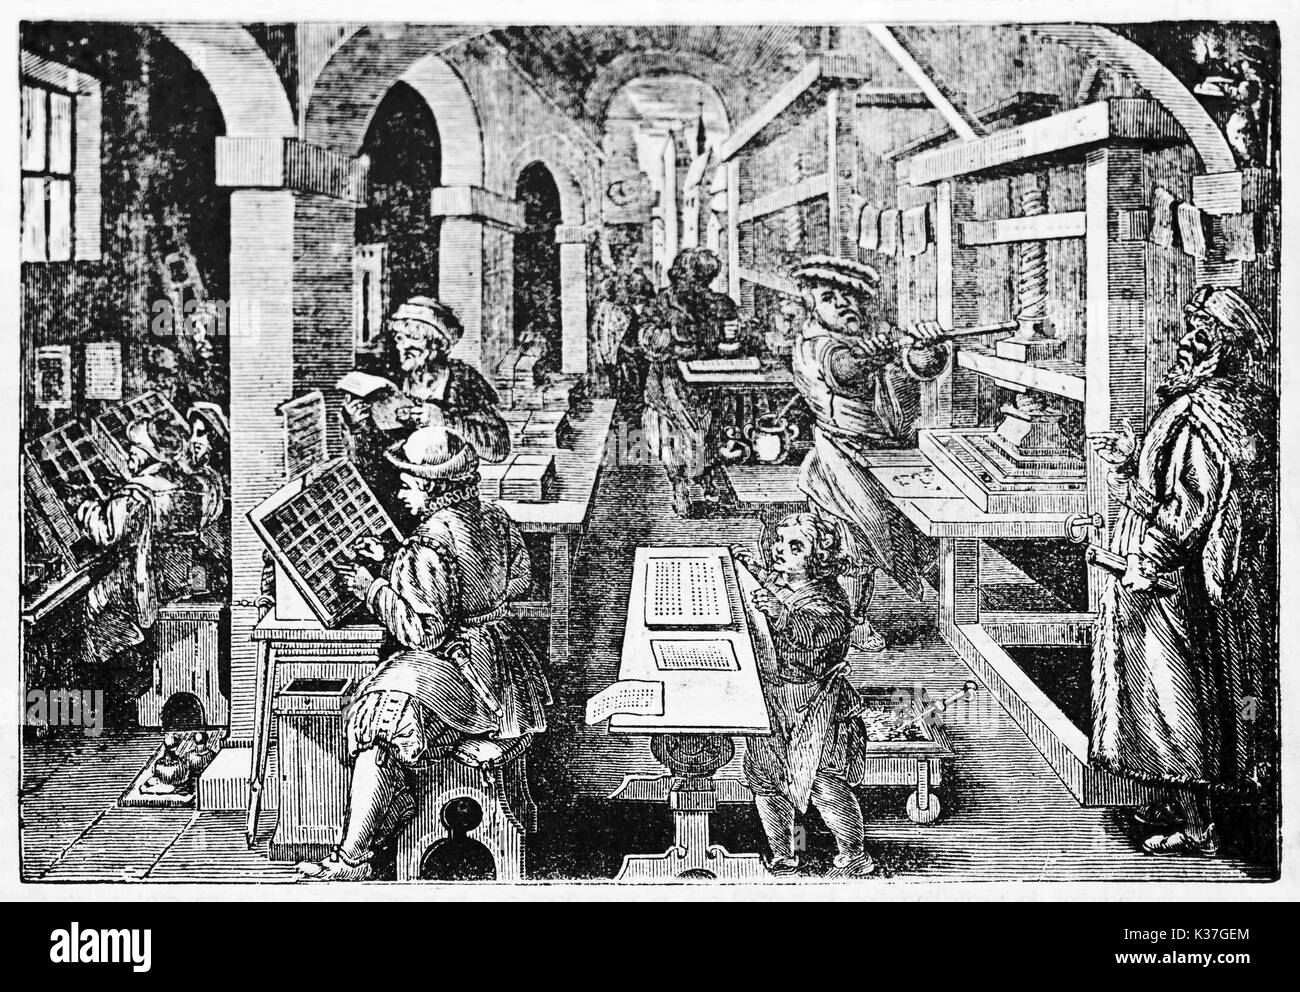 Imprenta holandesa medieval trabajando intensamente con sus trabajadores. Ilustración antigua por Stradanus publicado el Magasin pintoresco París 1834 Foto de stock